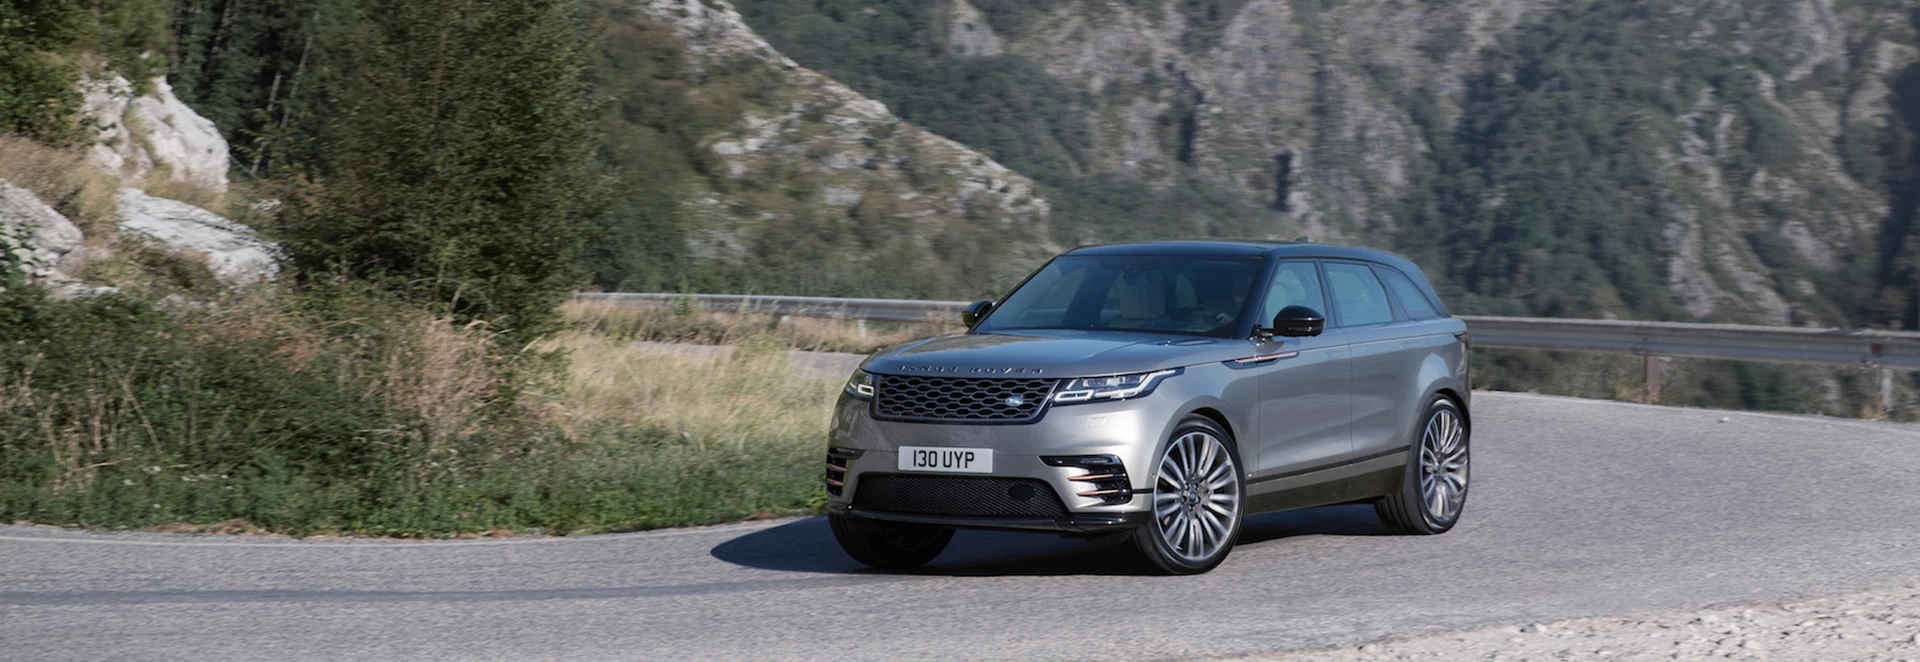 Range Rover Velar gets five-star safety rating 